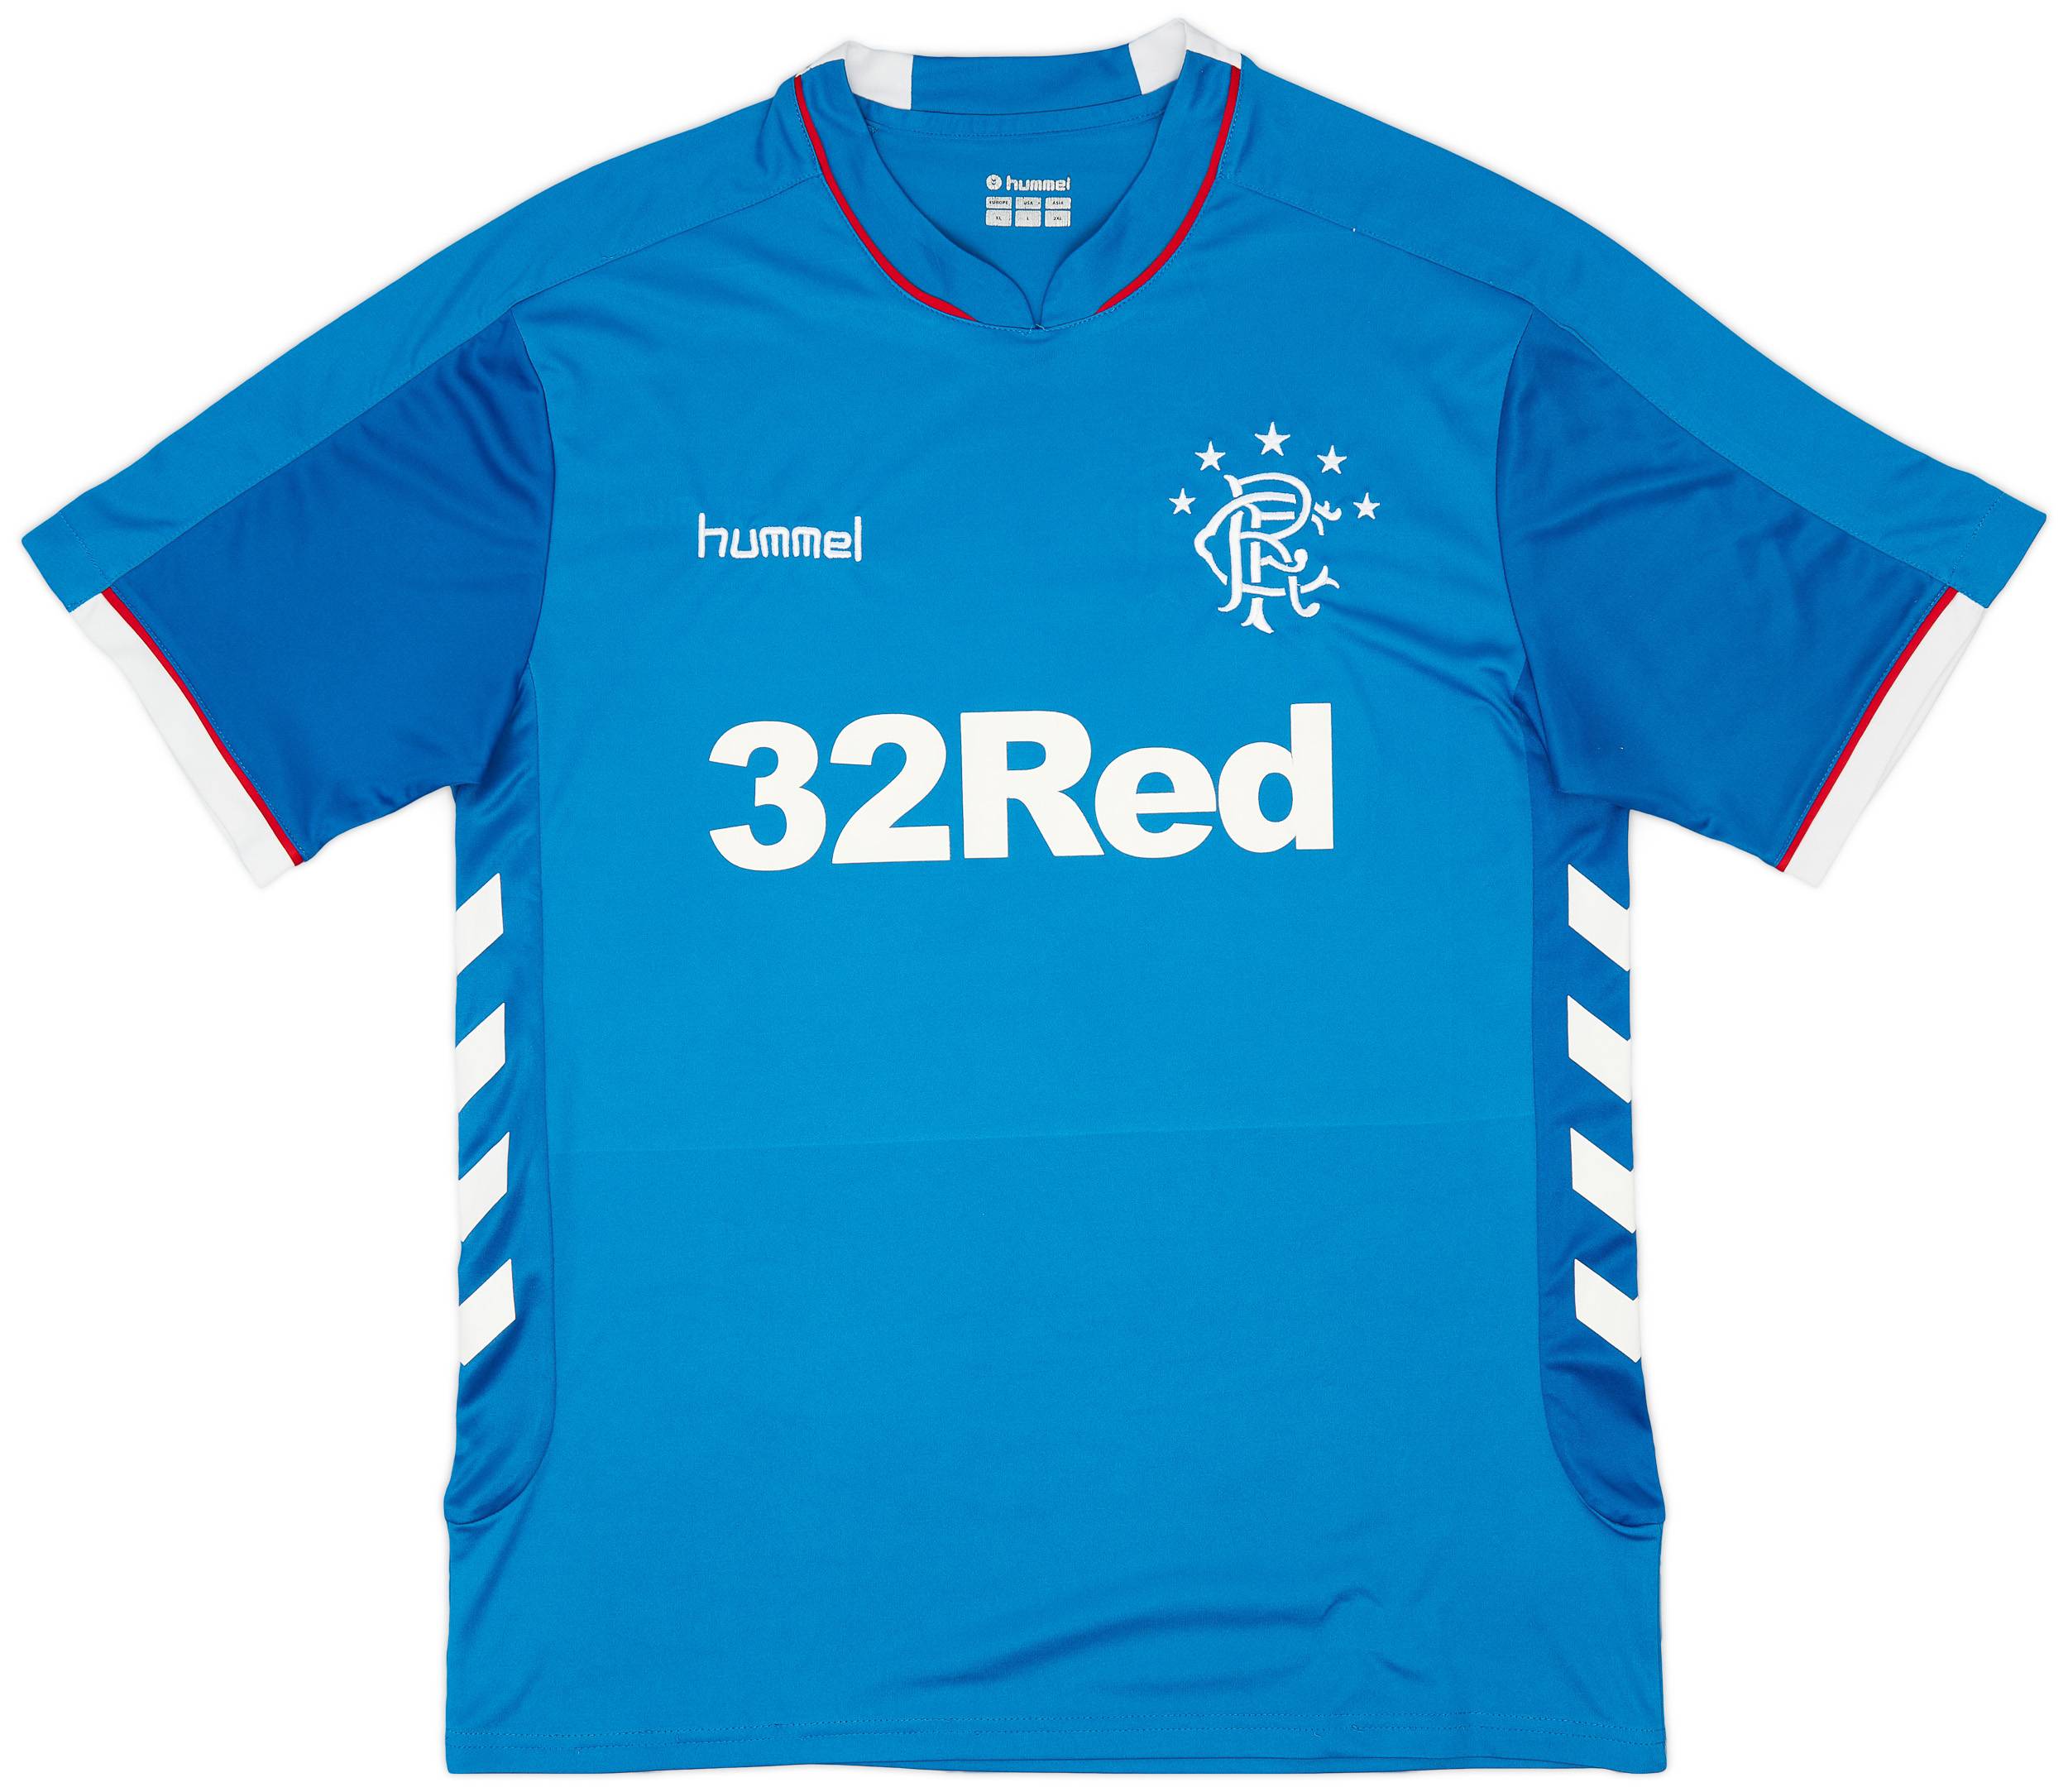 2018-19 Rangers Home Shirt - 6/10 - (XL)